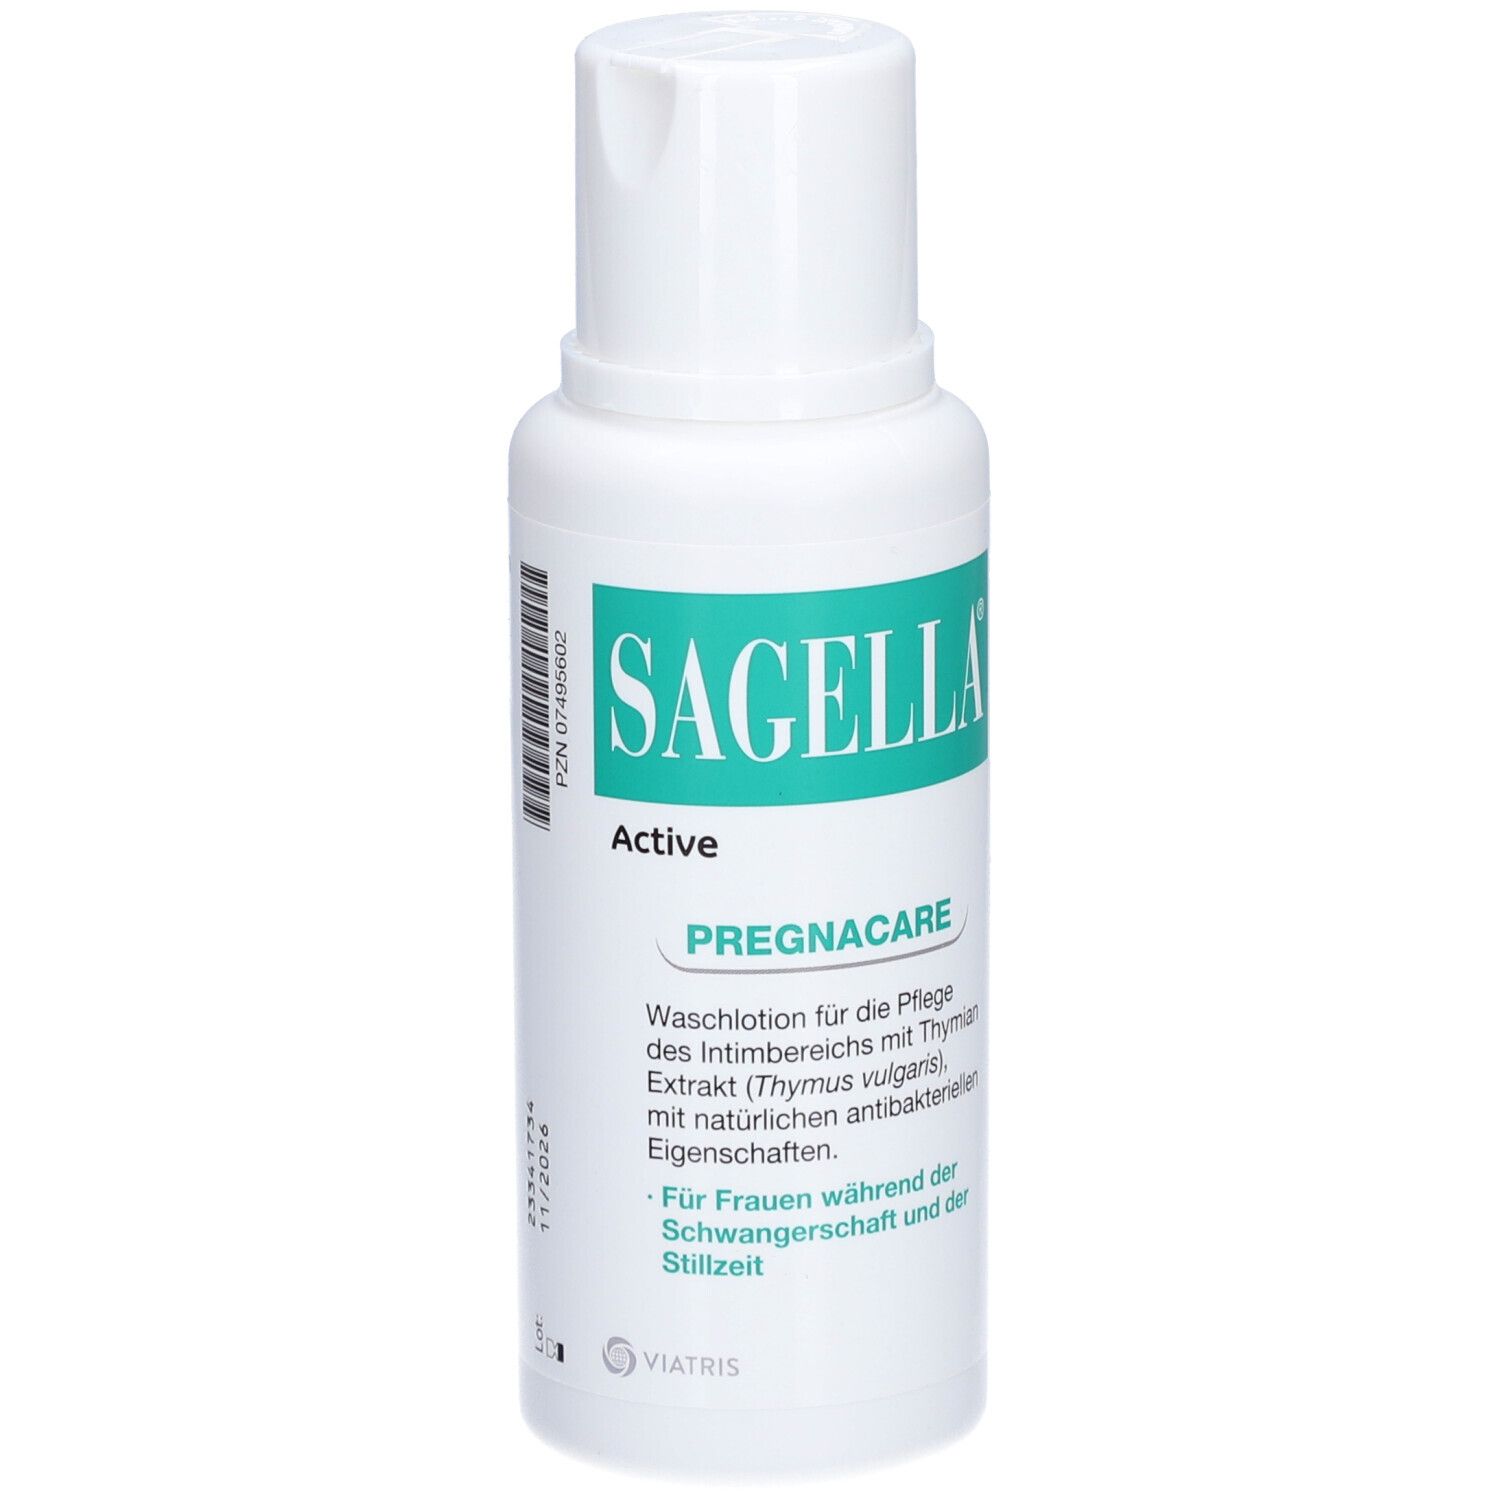 SAGELLA Active - PREGNACARE: Seifenfreie Intimwaschlotion für Frauen während und nach der Schwangerschaft